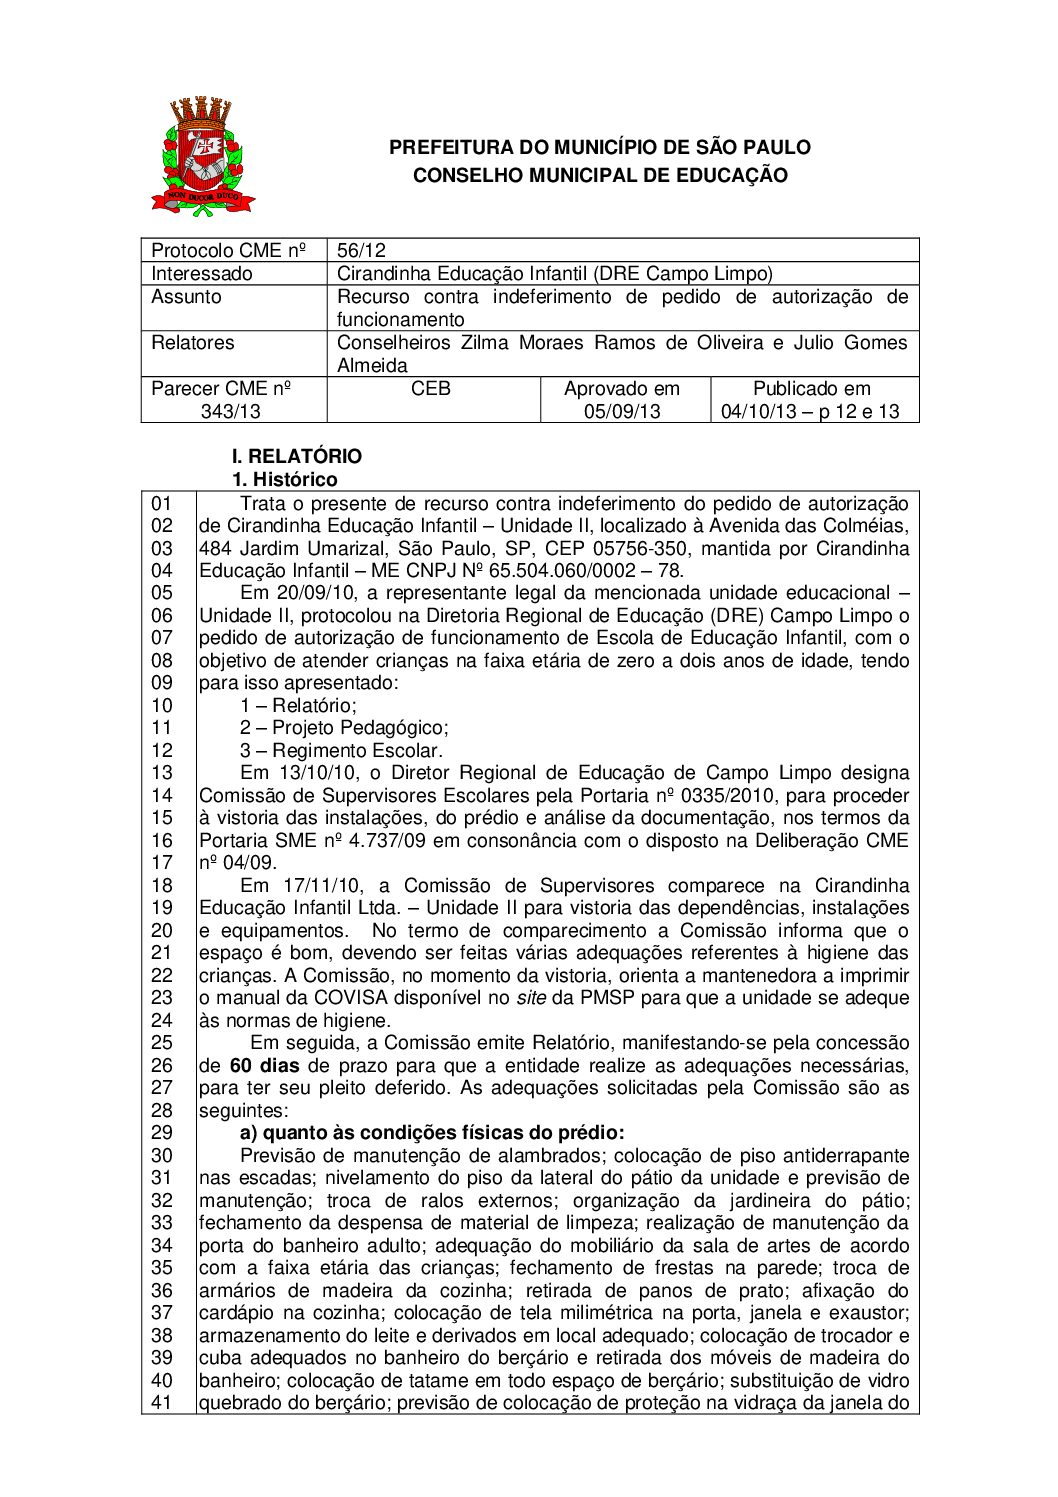 Parecer CME nº 343/2013 - Cirandinha Educação Infantil (DRE Campo Limpo) - Recurso contra indeferimento de pedido de autorização de funcionamento